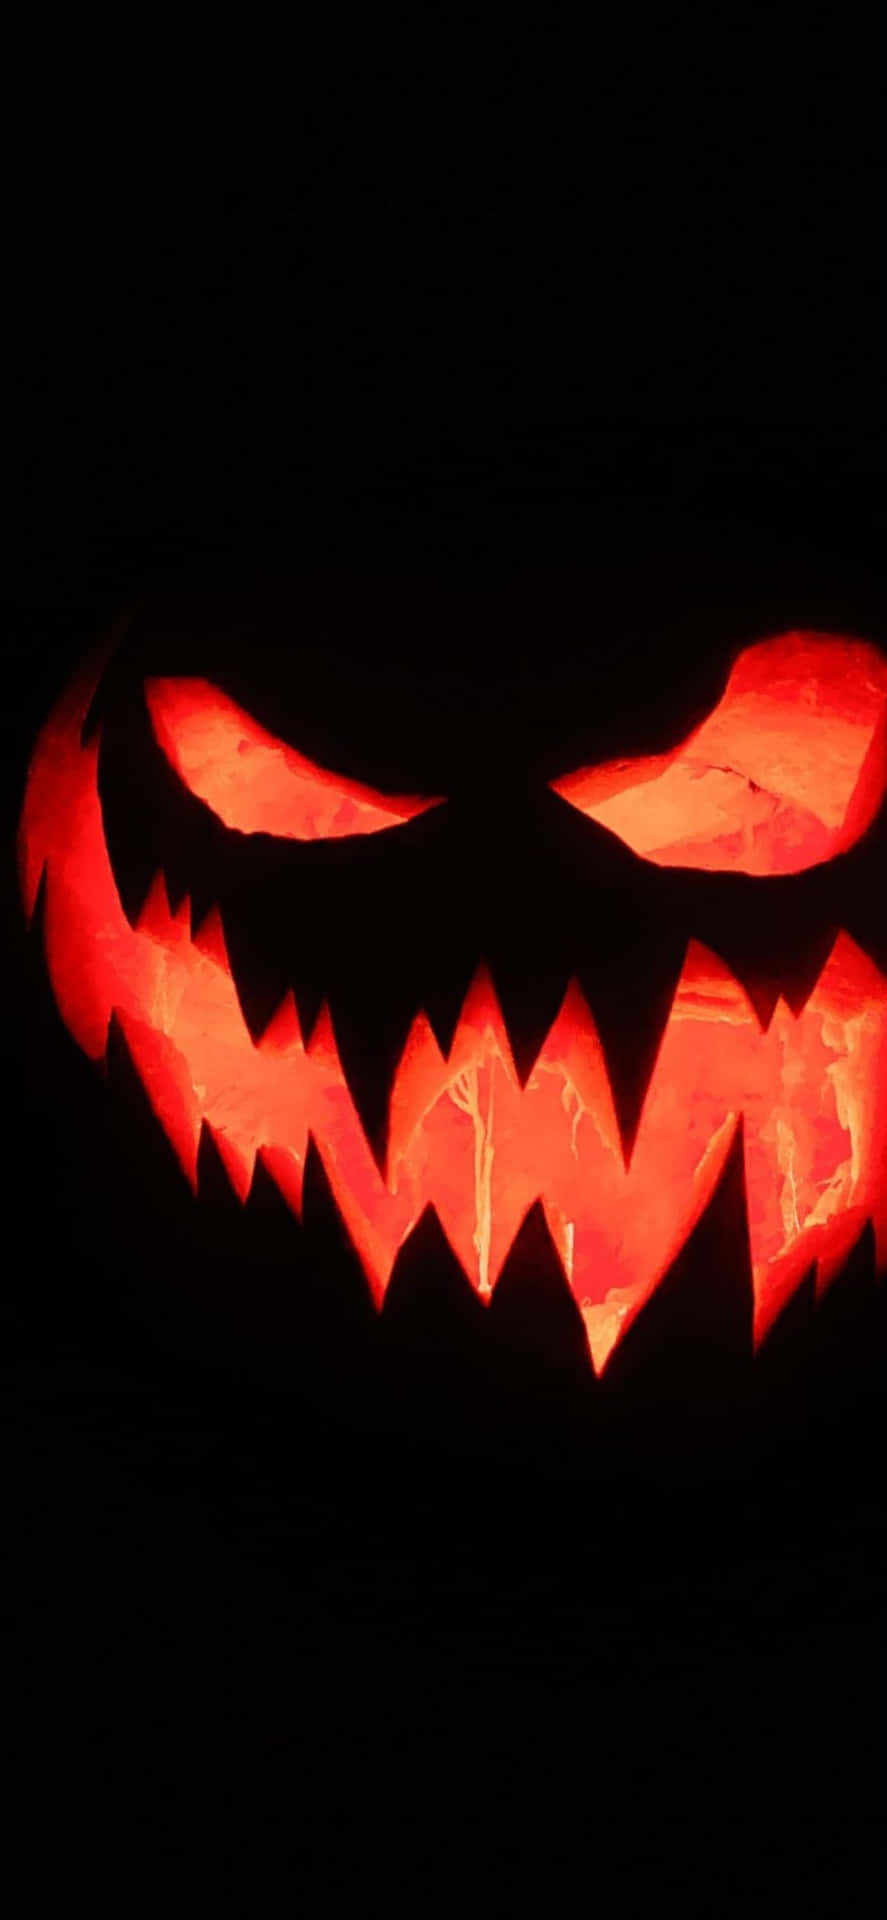 Geupp Din Enhet En Skrämmande Halloween-känsla Med En Läskig Iphone-bakgrundsbild.